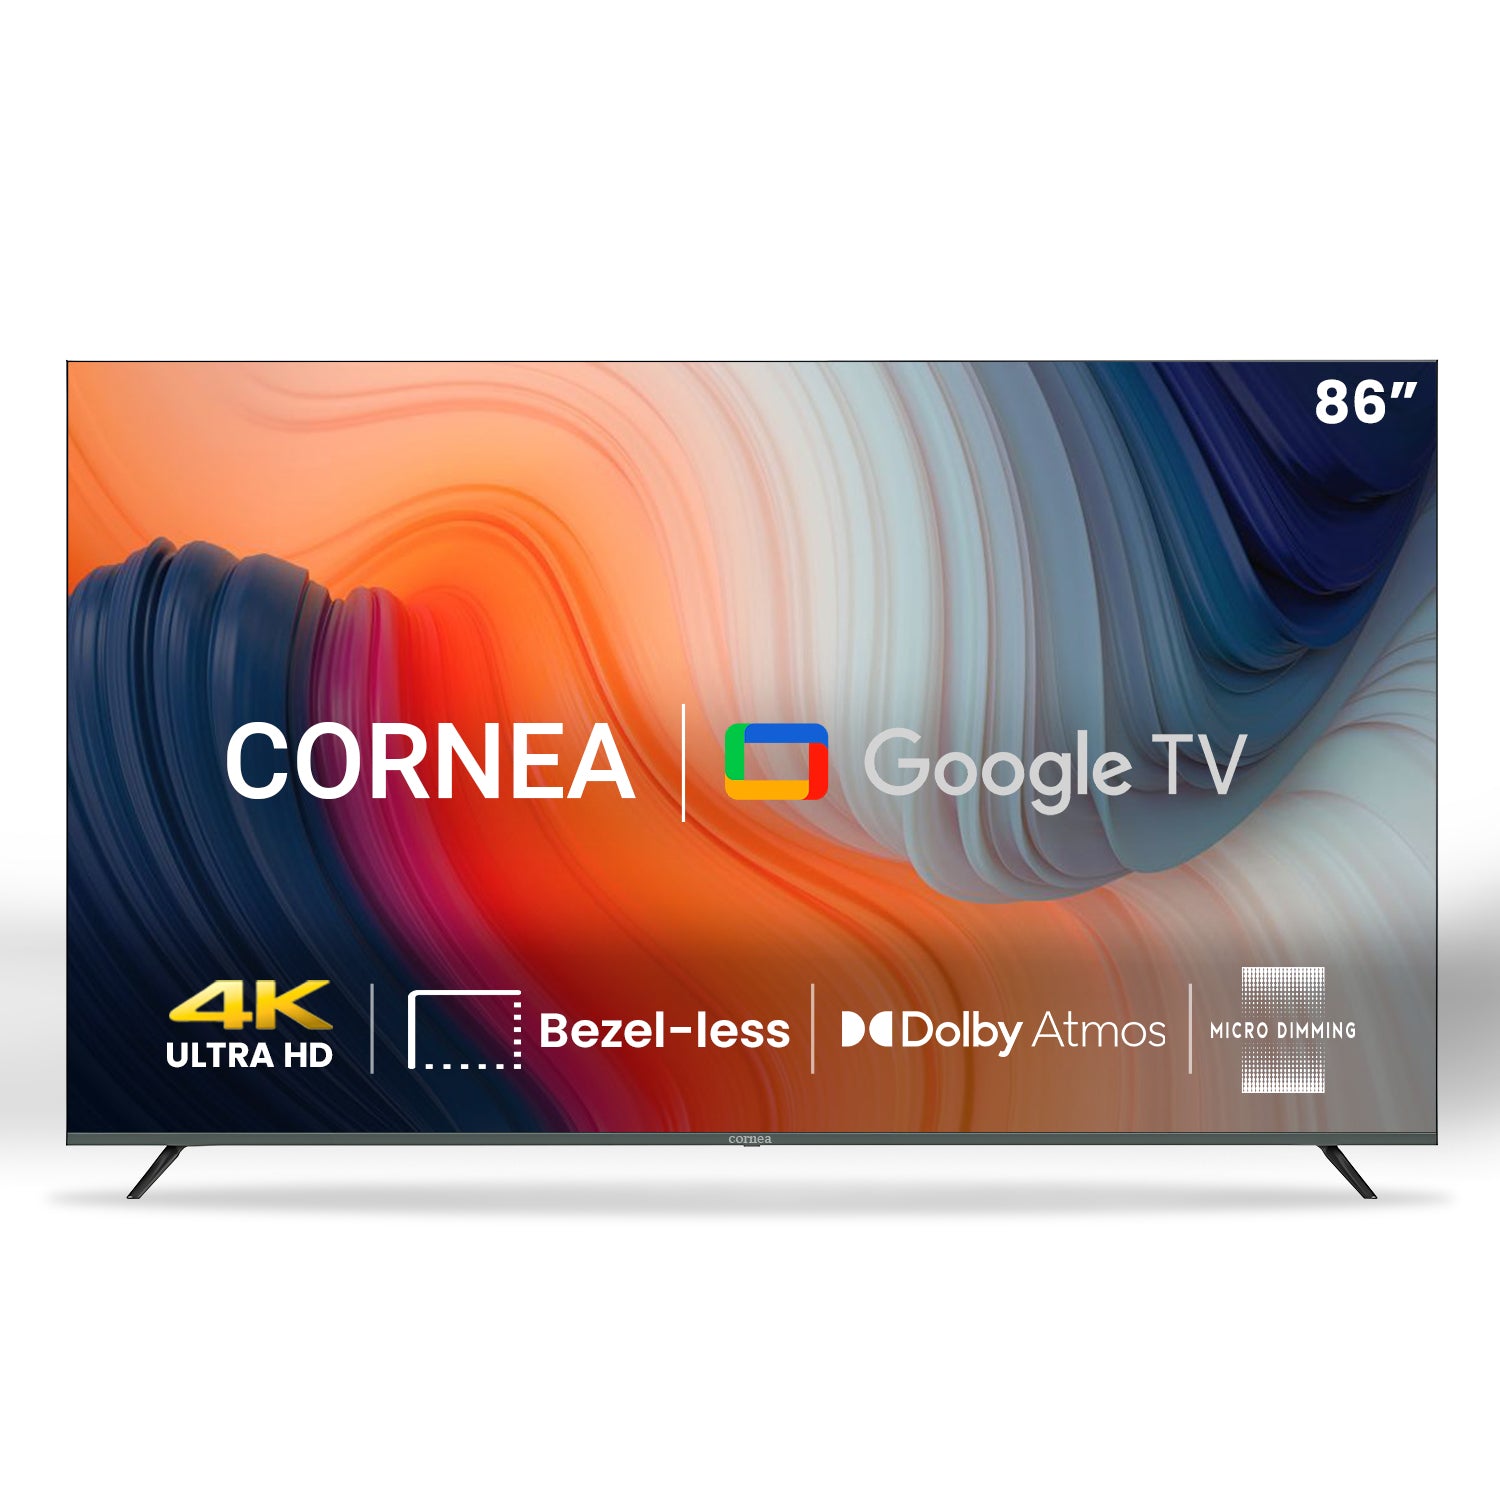 Cornea 86" Smart android TV